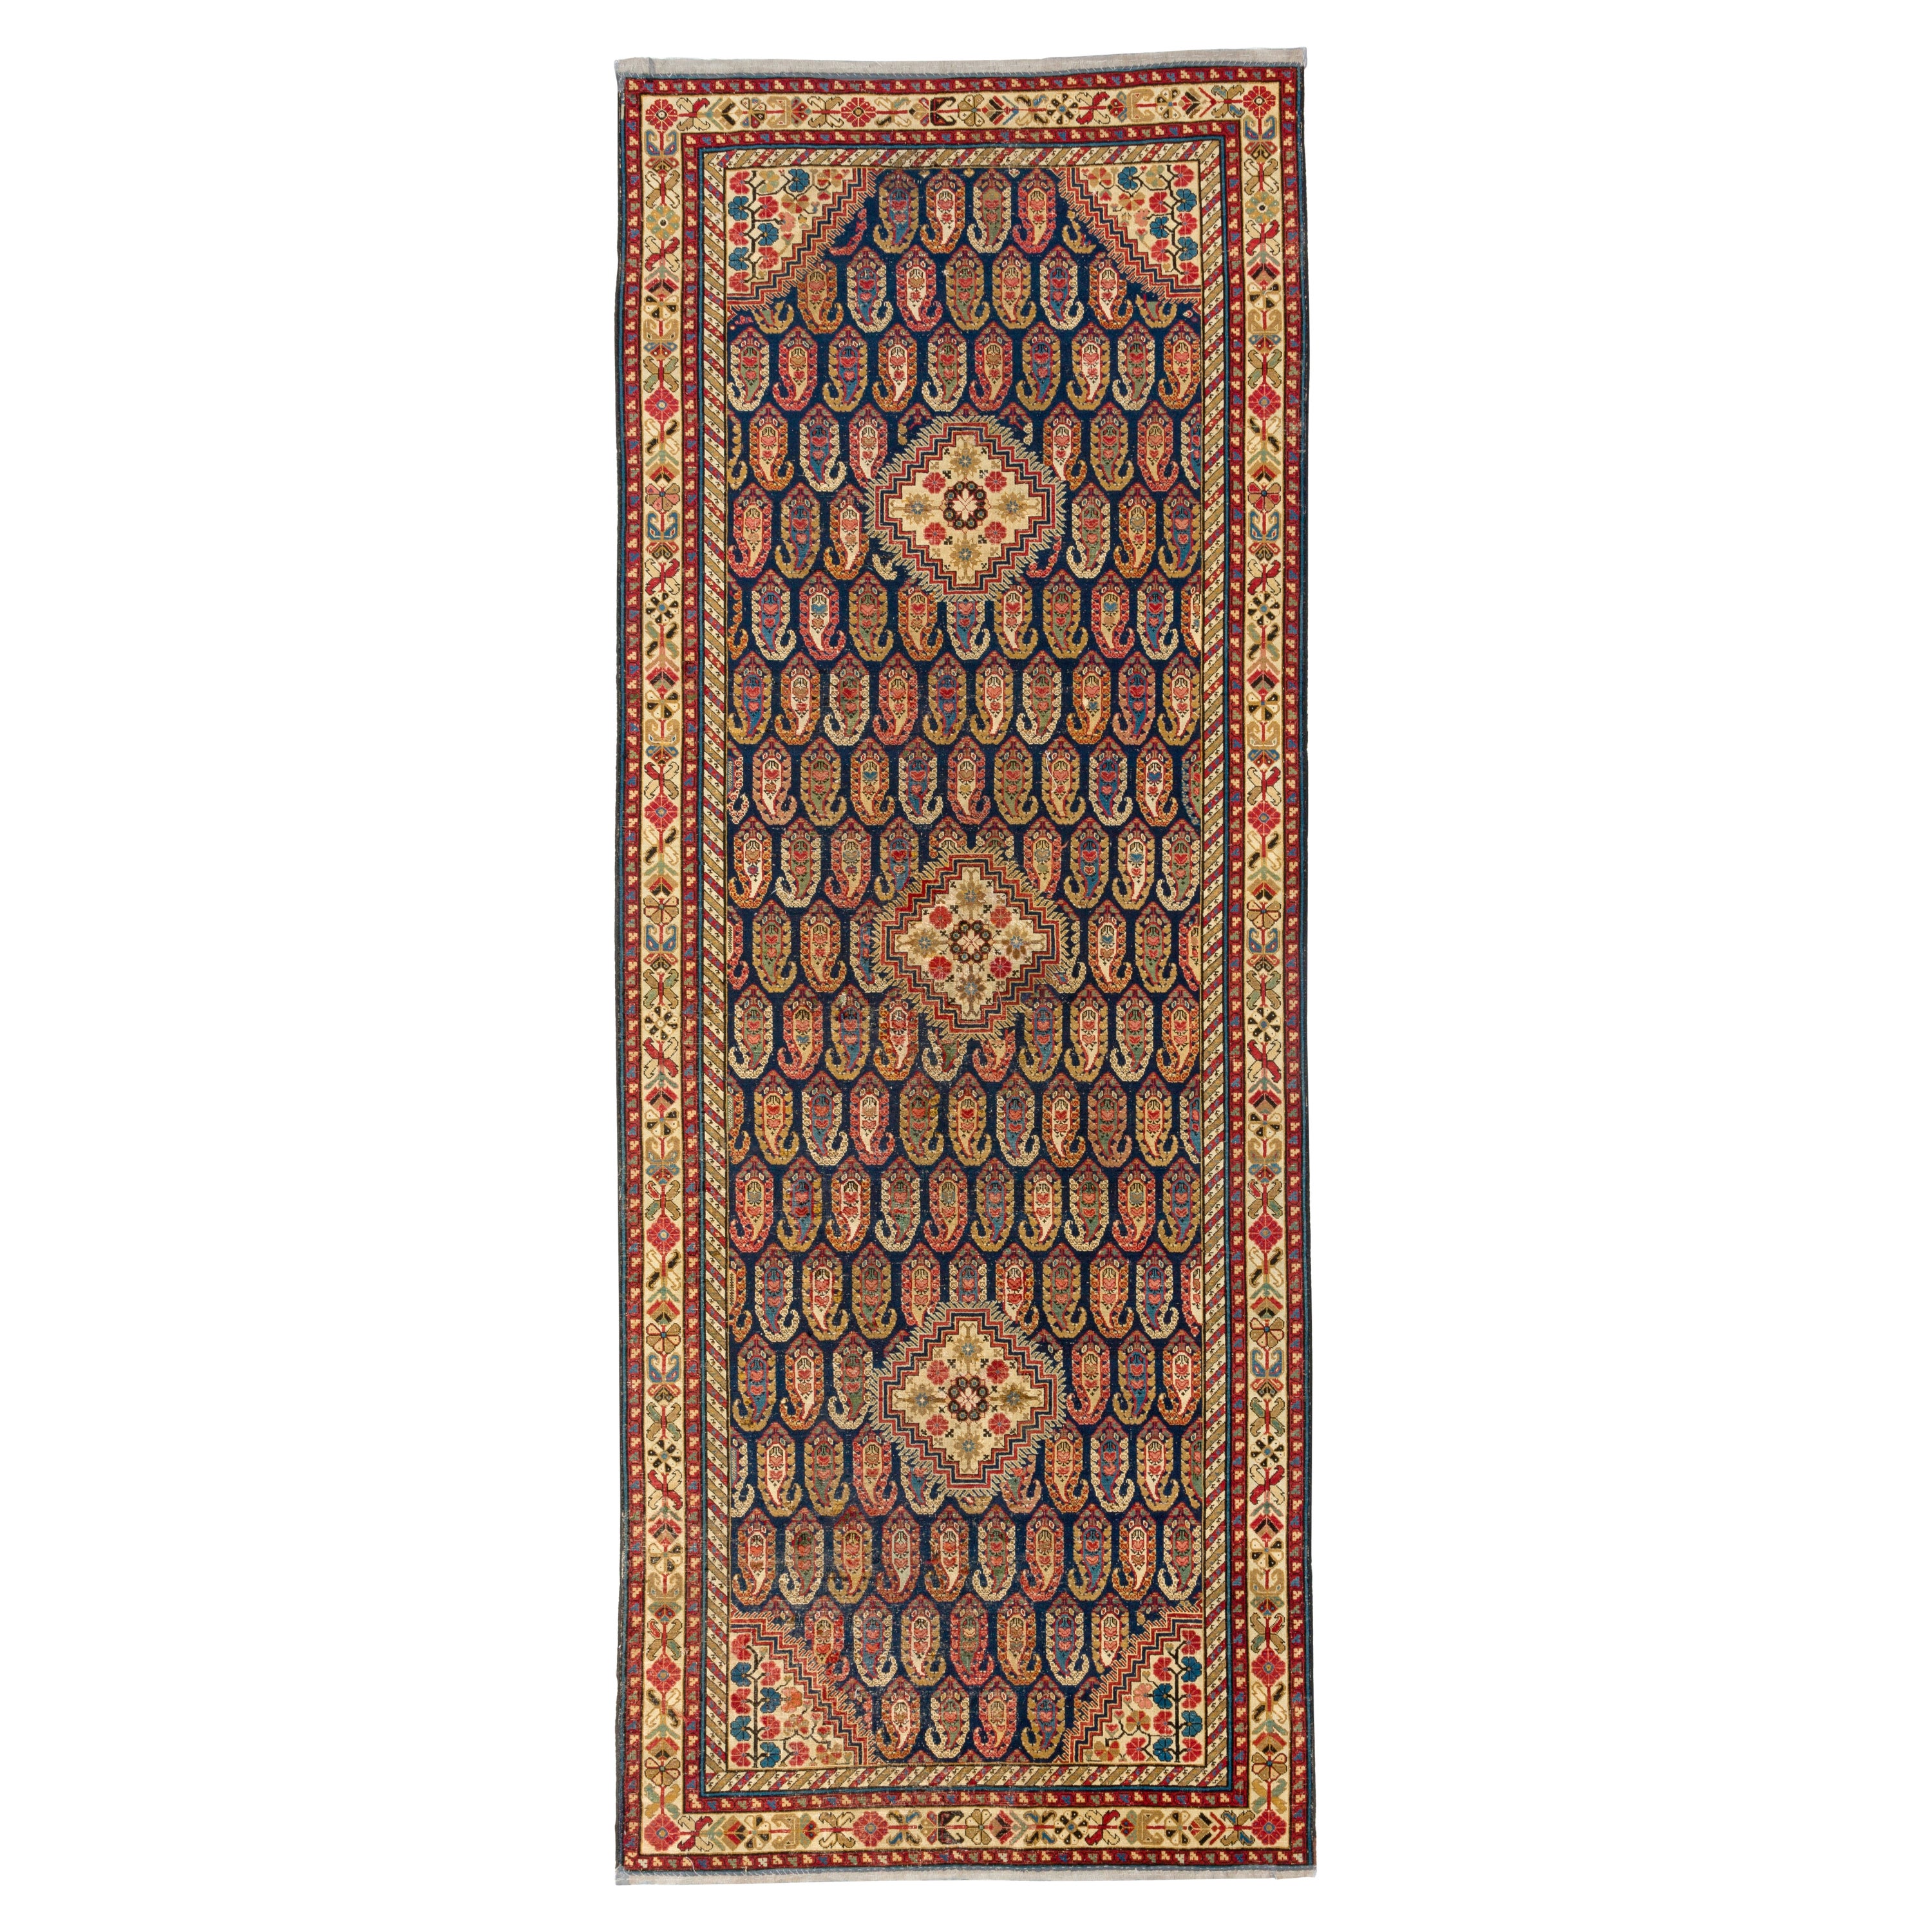 4.6x12 ft Antique Caucasian Khila Rug, Ca 1800, Museum Quality Collectors Carpet For Sale